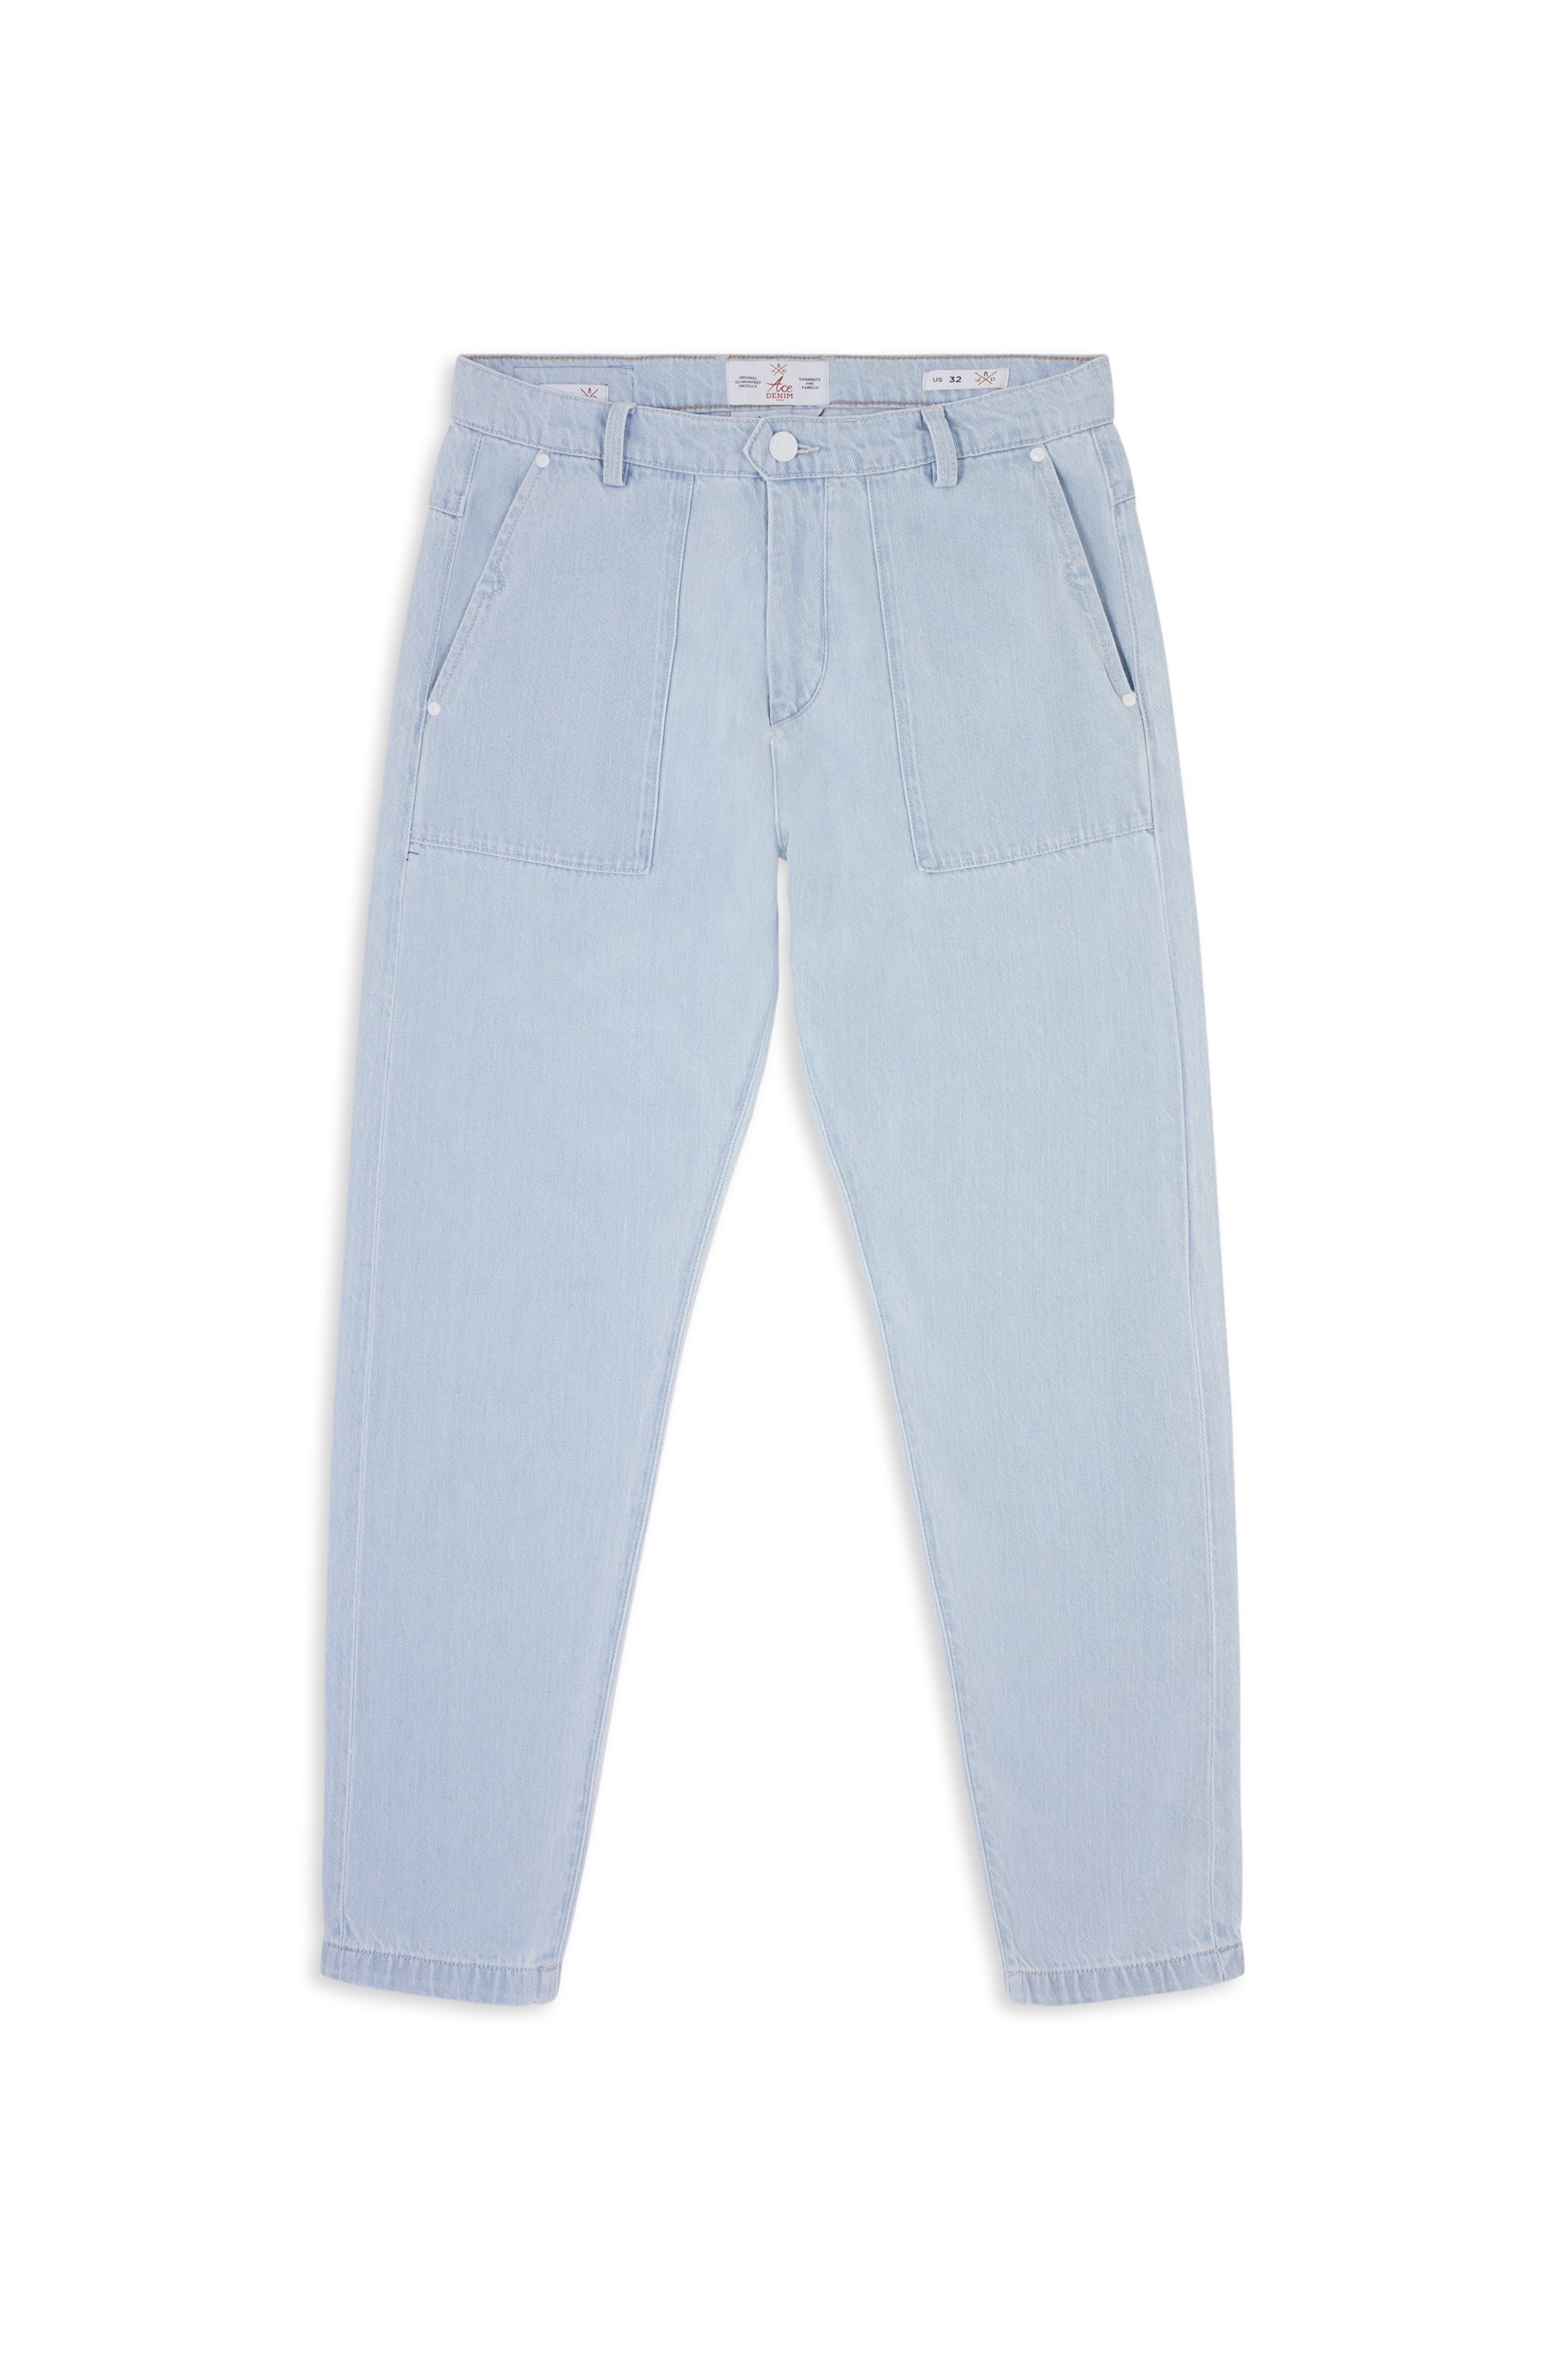 jeans unisex bleu clair délavé coupe cargo straight 